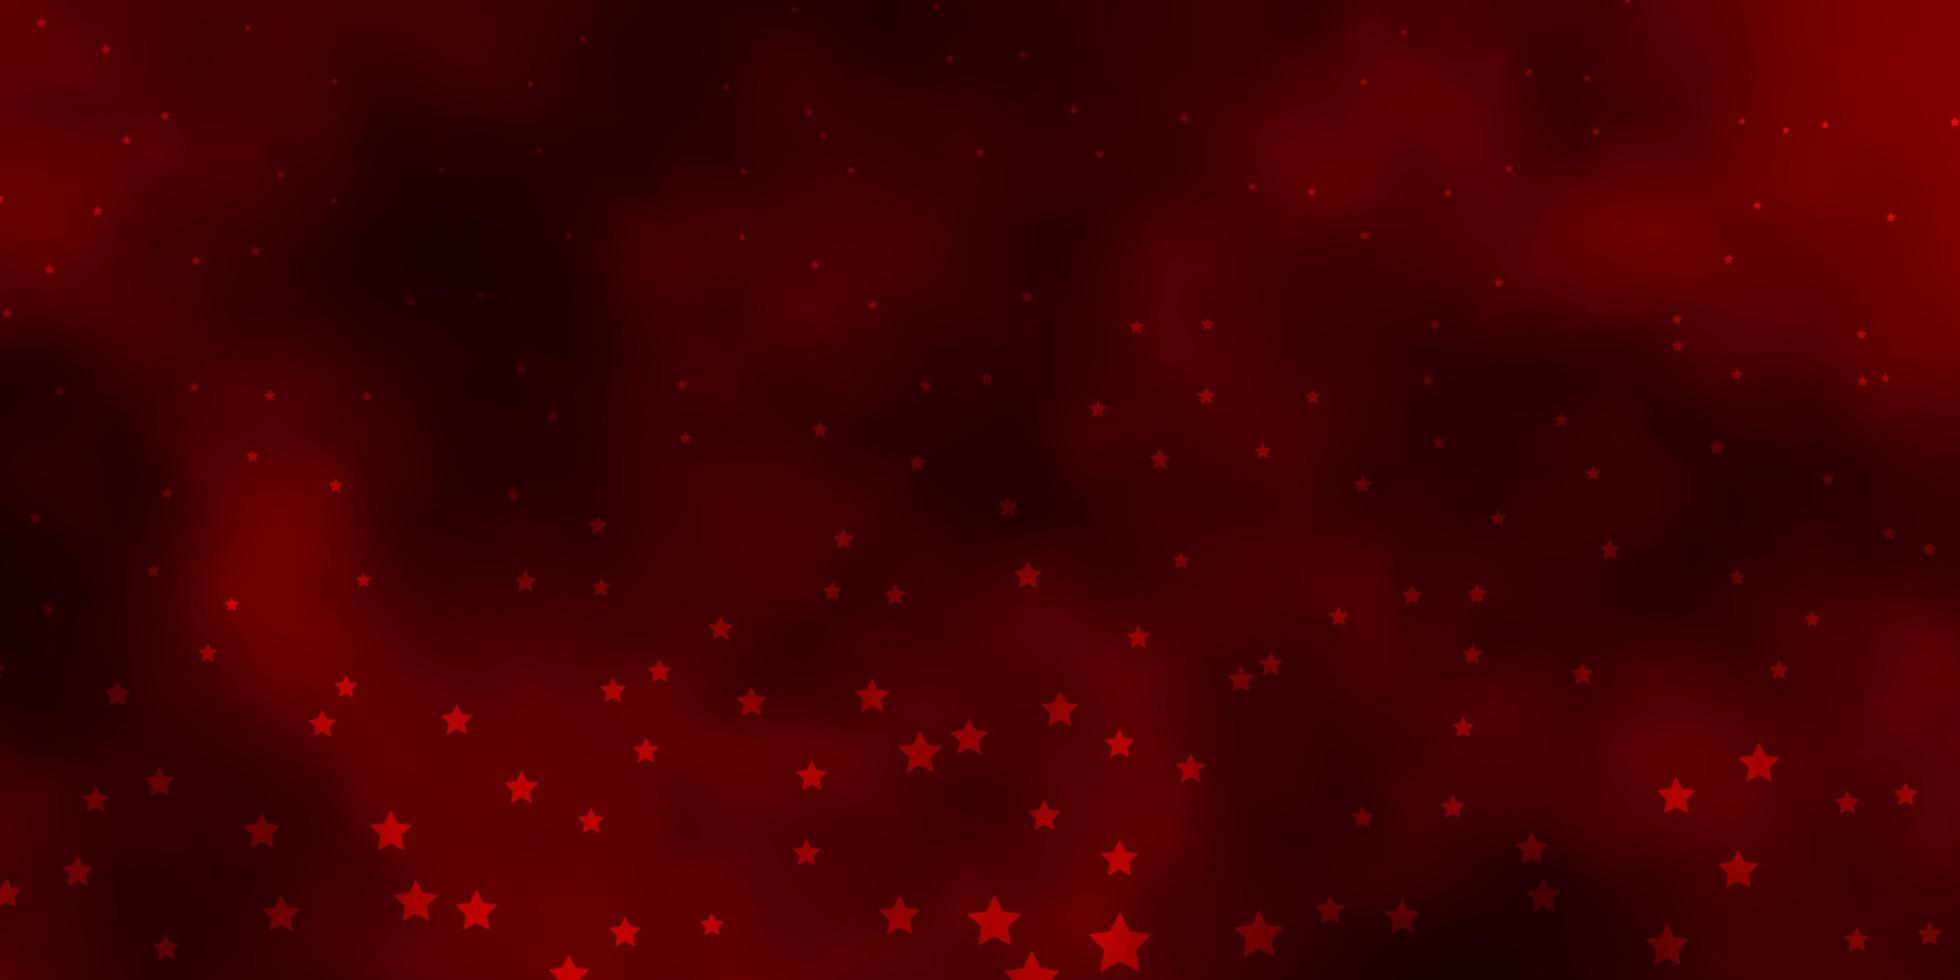 textura de vector rojo verde oscuro con hermosas estrellas ilustración colorida en estilo abstracto con diseño de estrellas de degradado para la promoción de su negocio